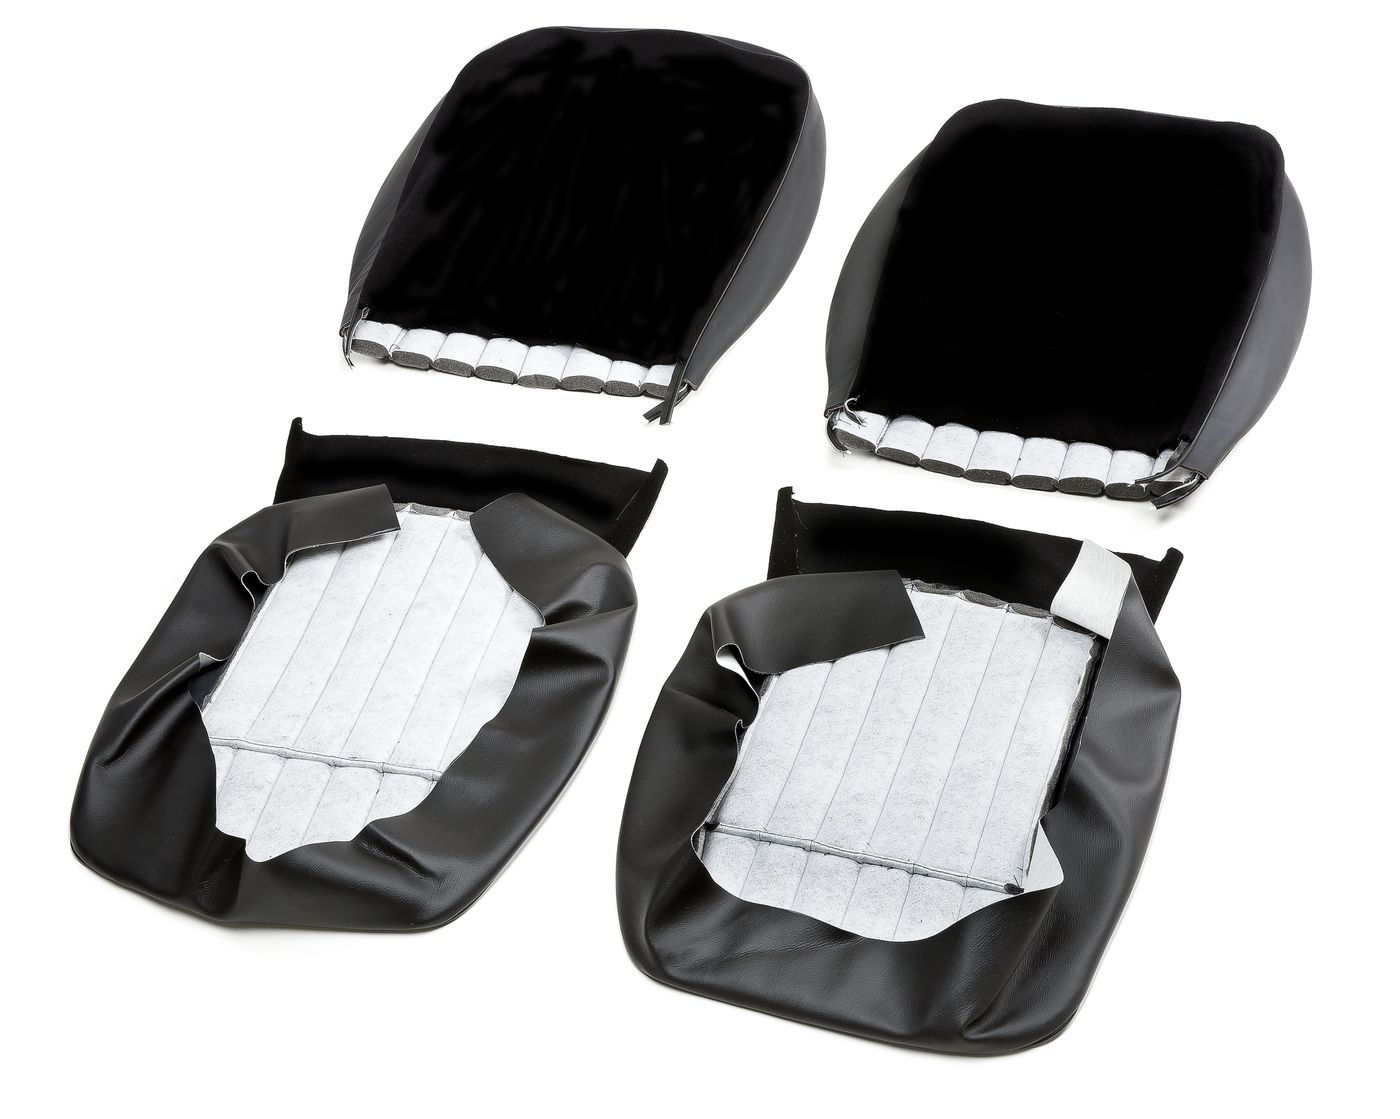 Ledersitzbezüge
Leather seat covers
Housses de siège en cuir
F